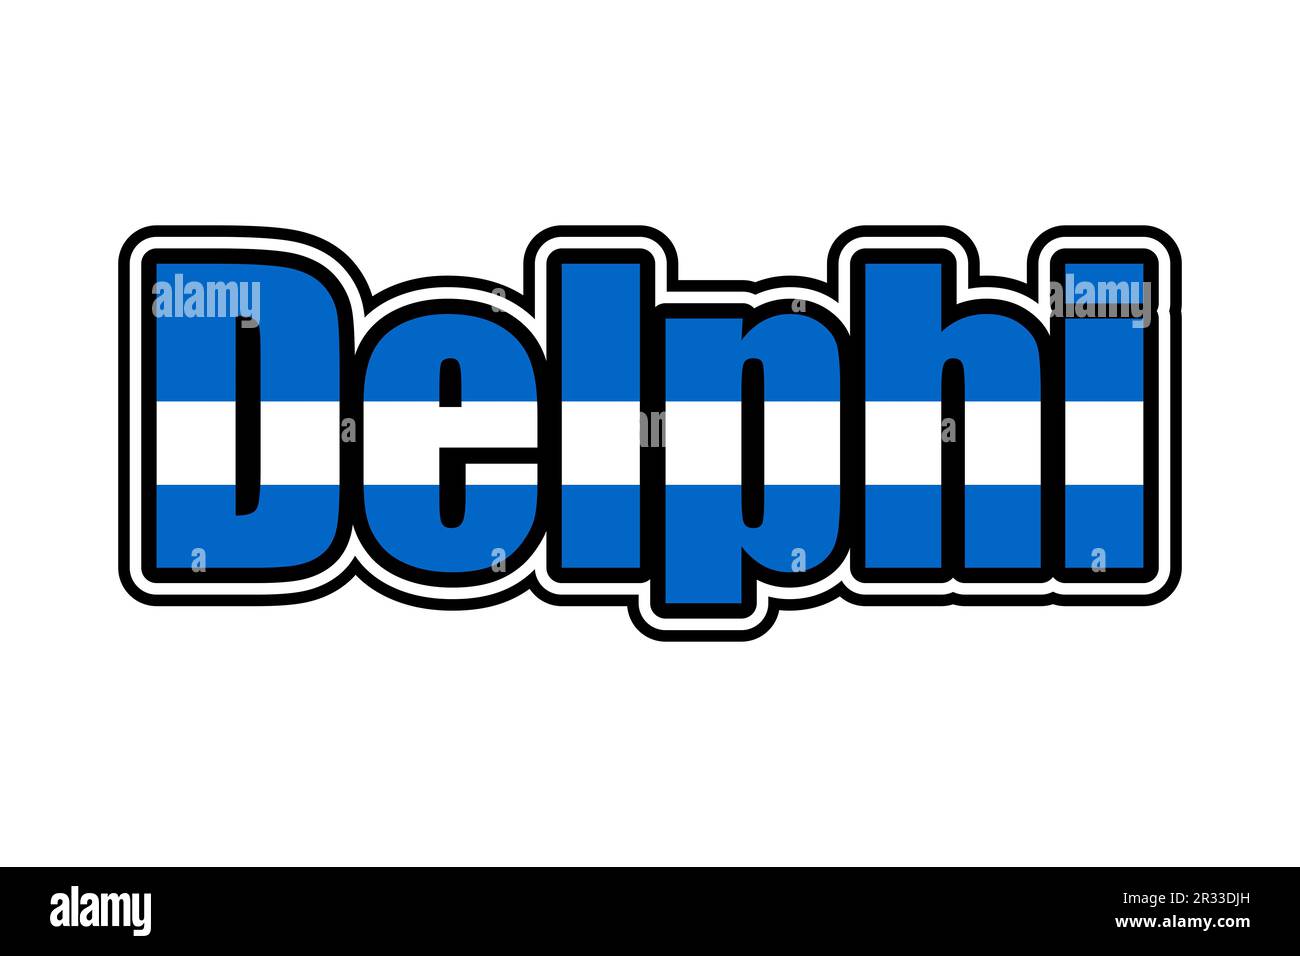 Icône de signe Delphi avec couleurs de drapeau grec Banque D'Images